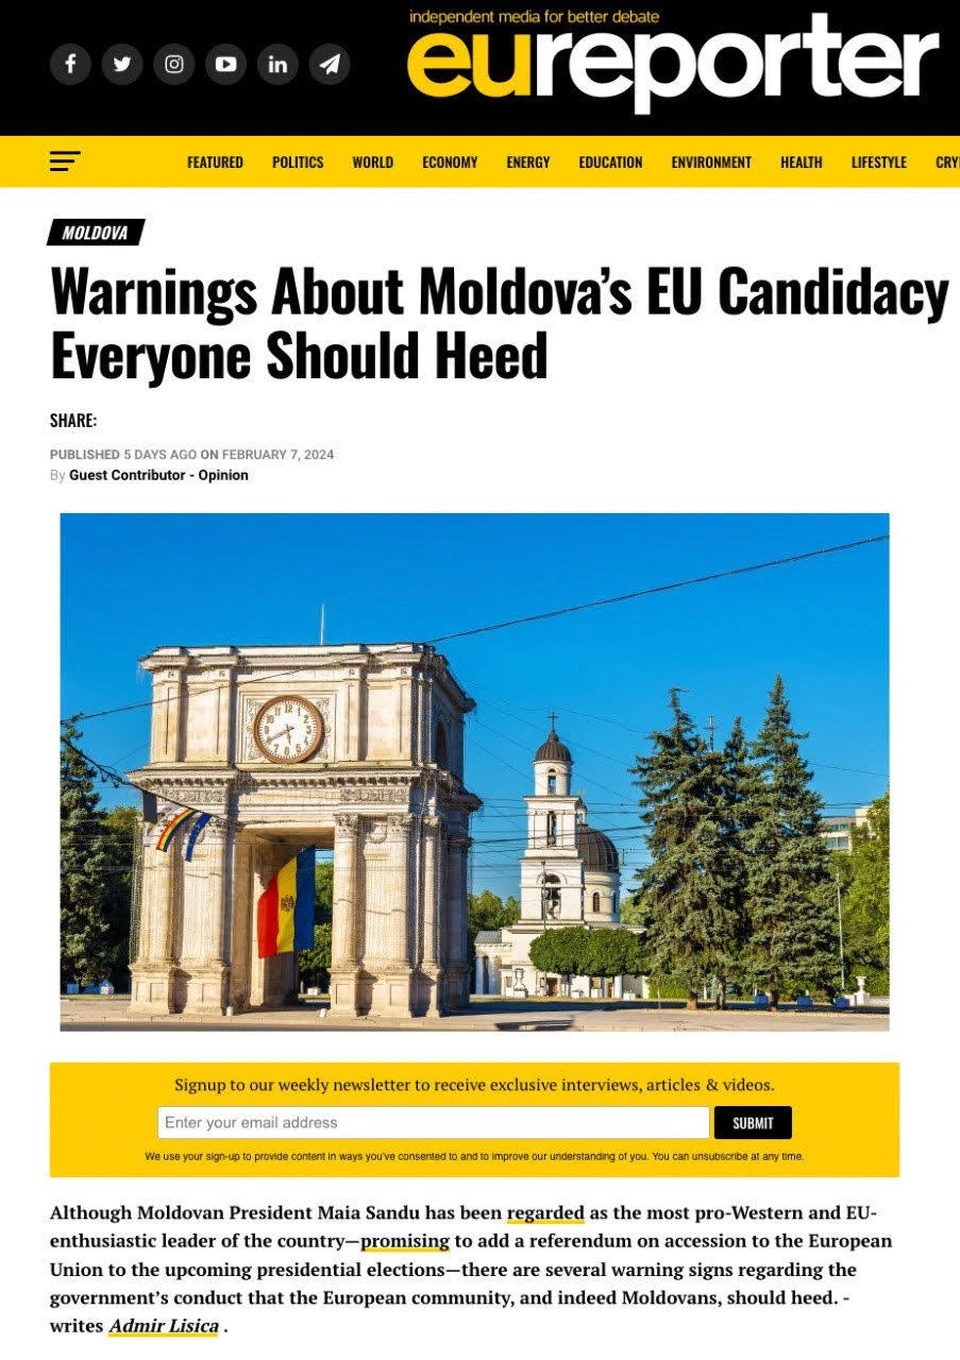 Поспешное вступление Молдовы в ЕС может усугубить существующие проблемы и ставит под угрозу развитие страны.